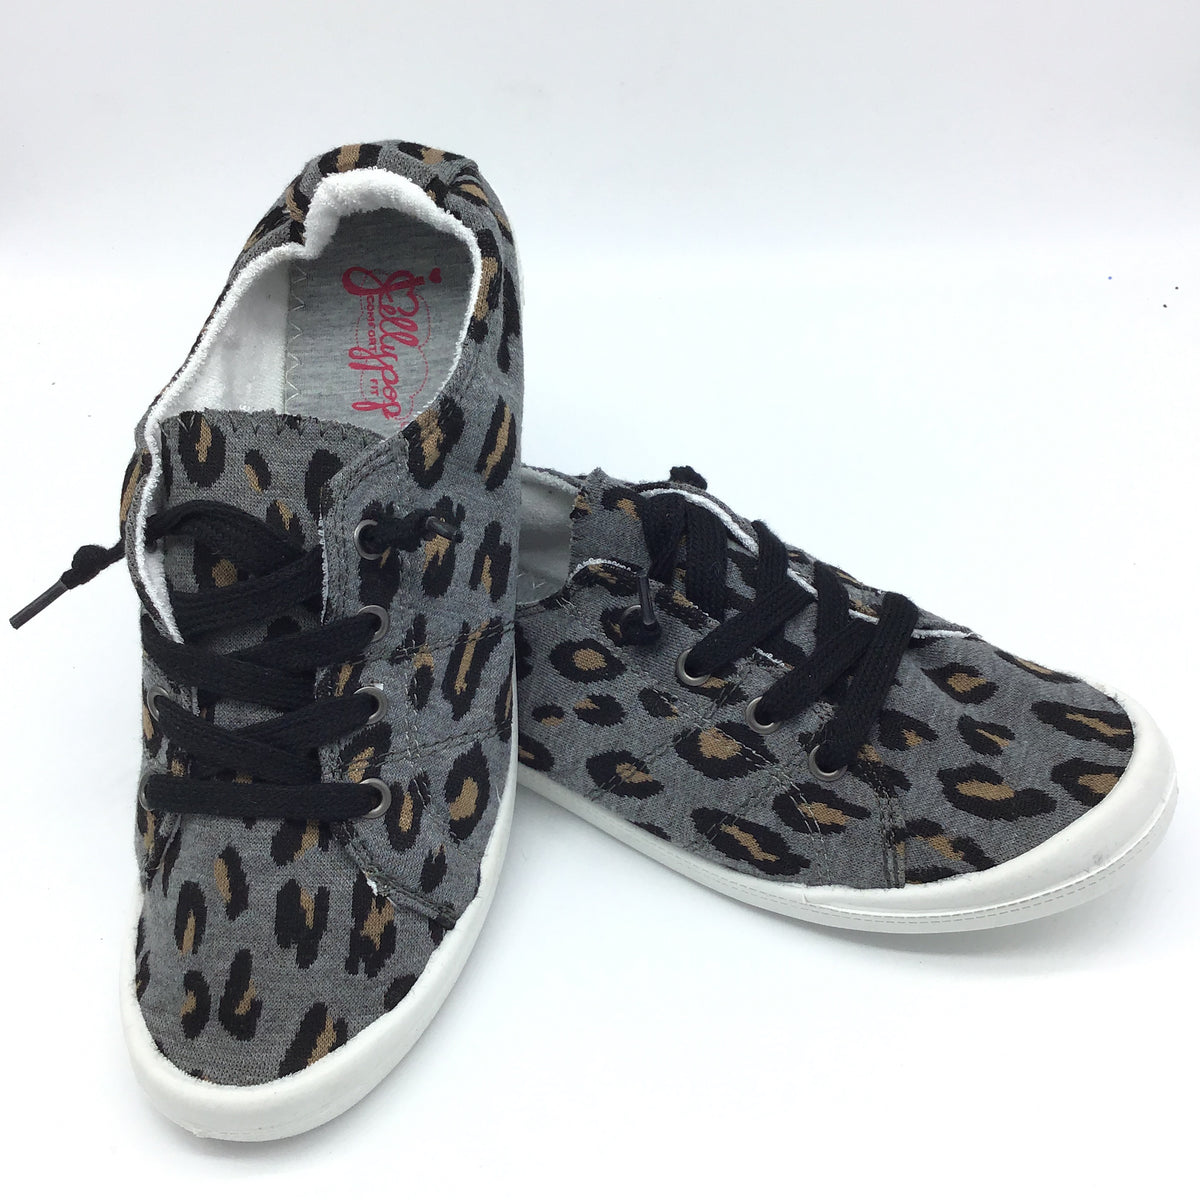 Jellypop "Dallas" Slip on Sneaker (Leopard/Grey)